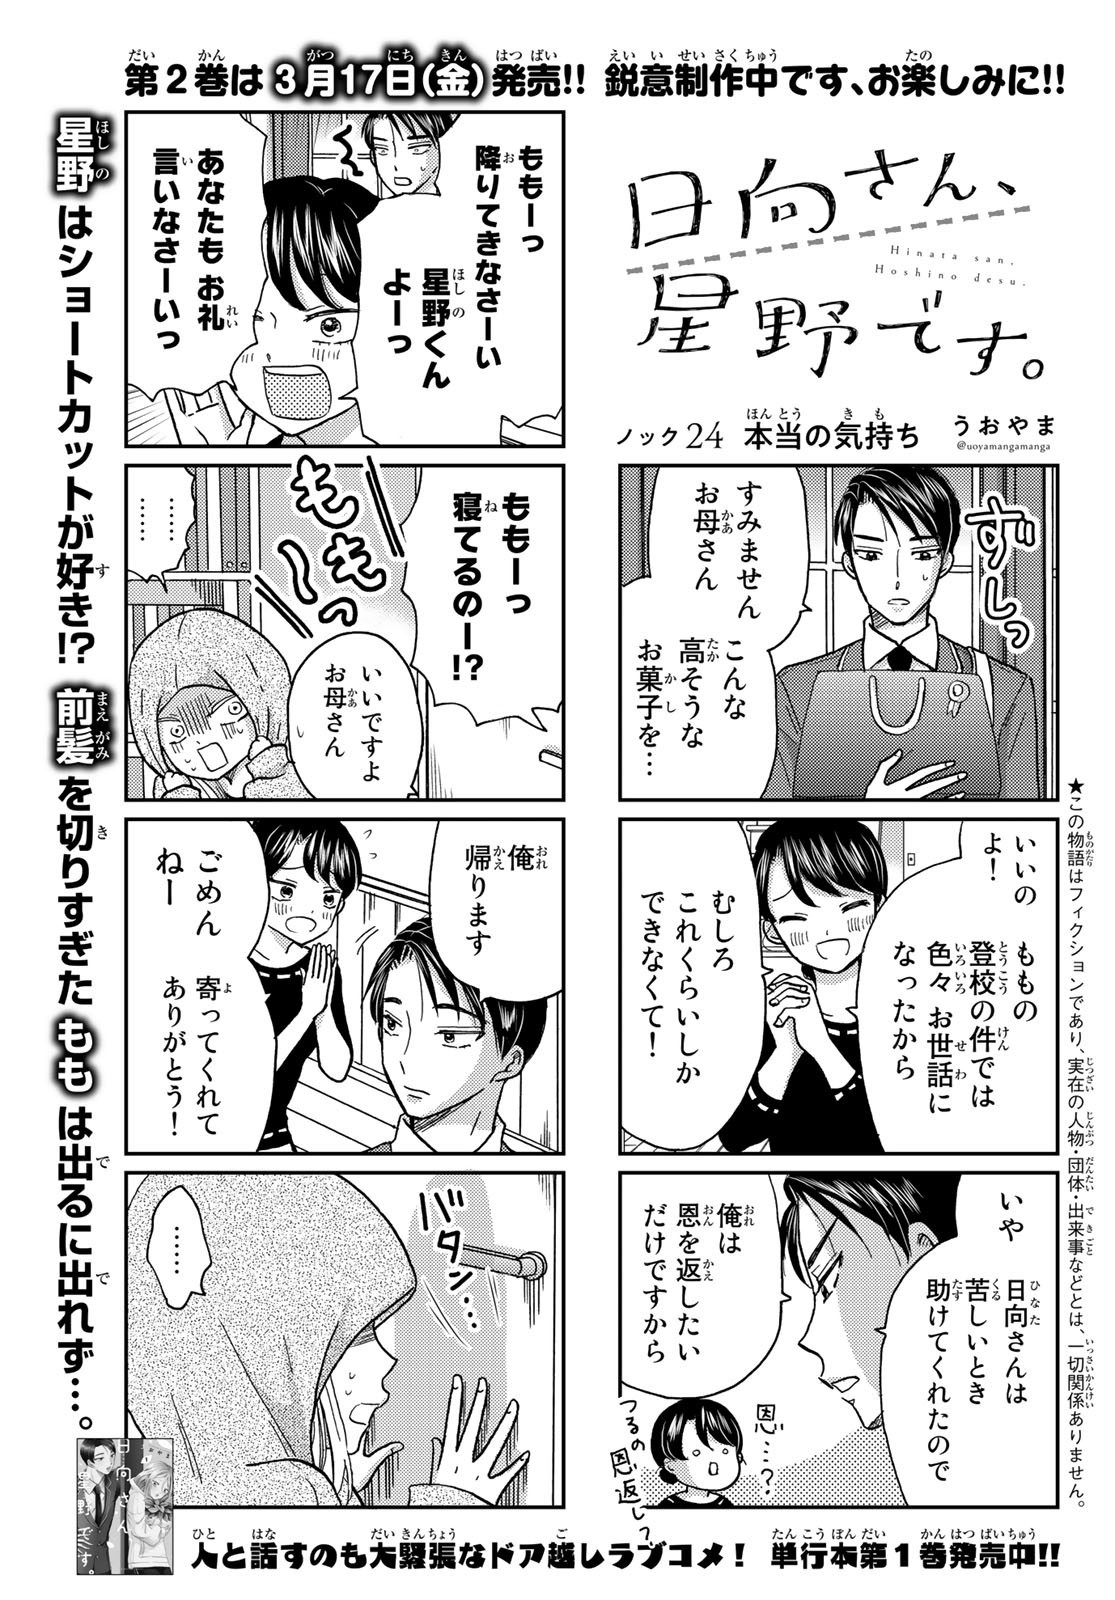 Hinata-san, Hoshino desu. - Chapter 024 - Page 1